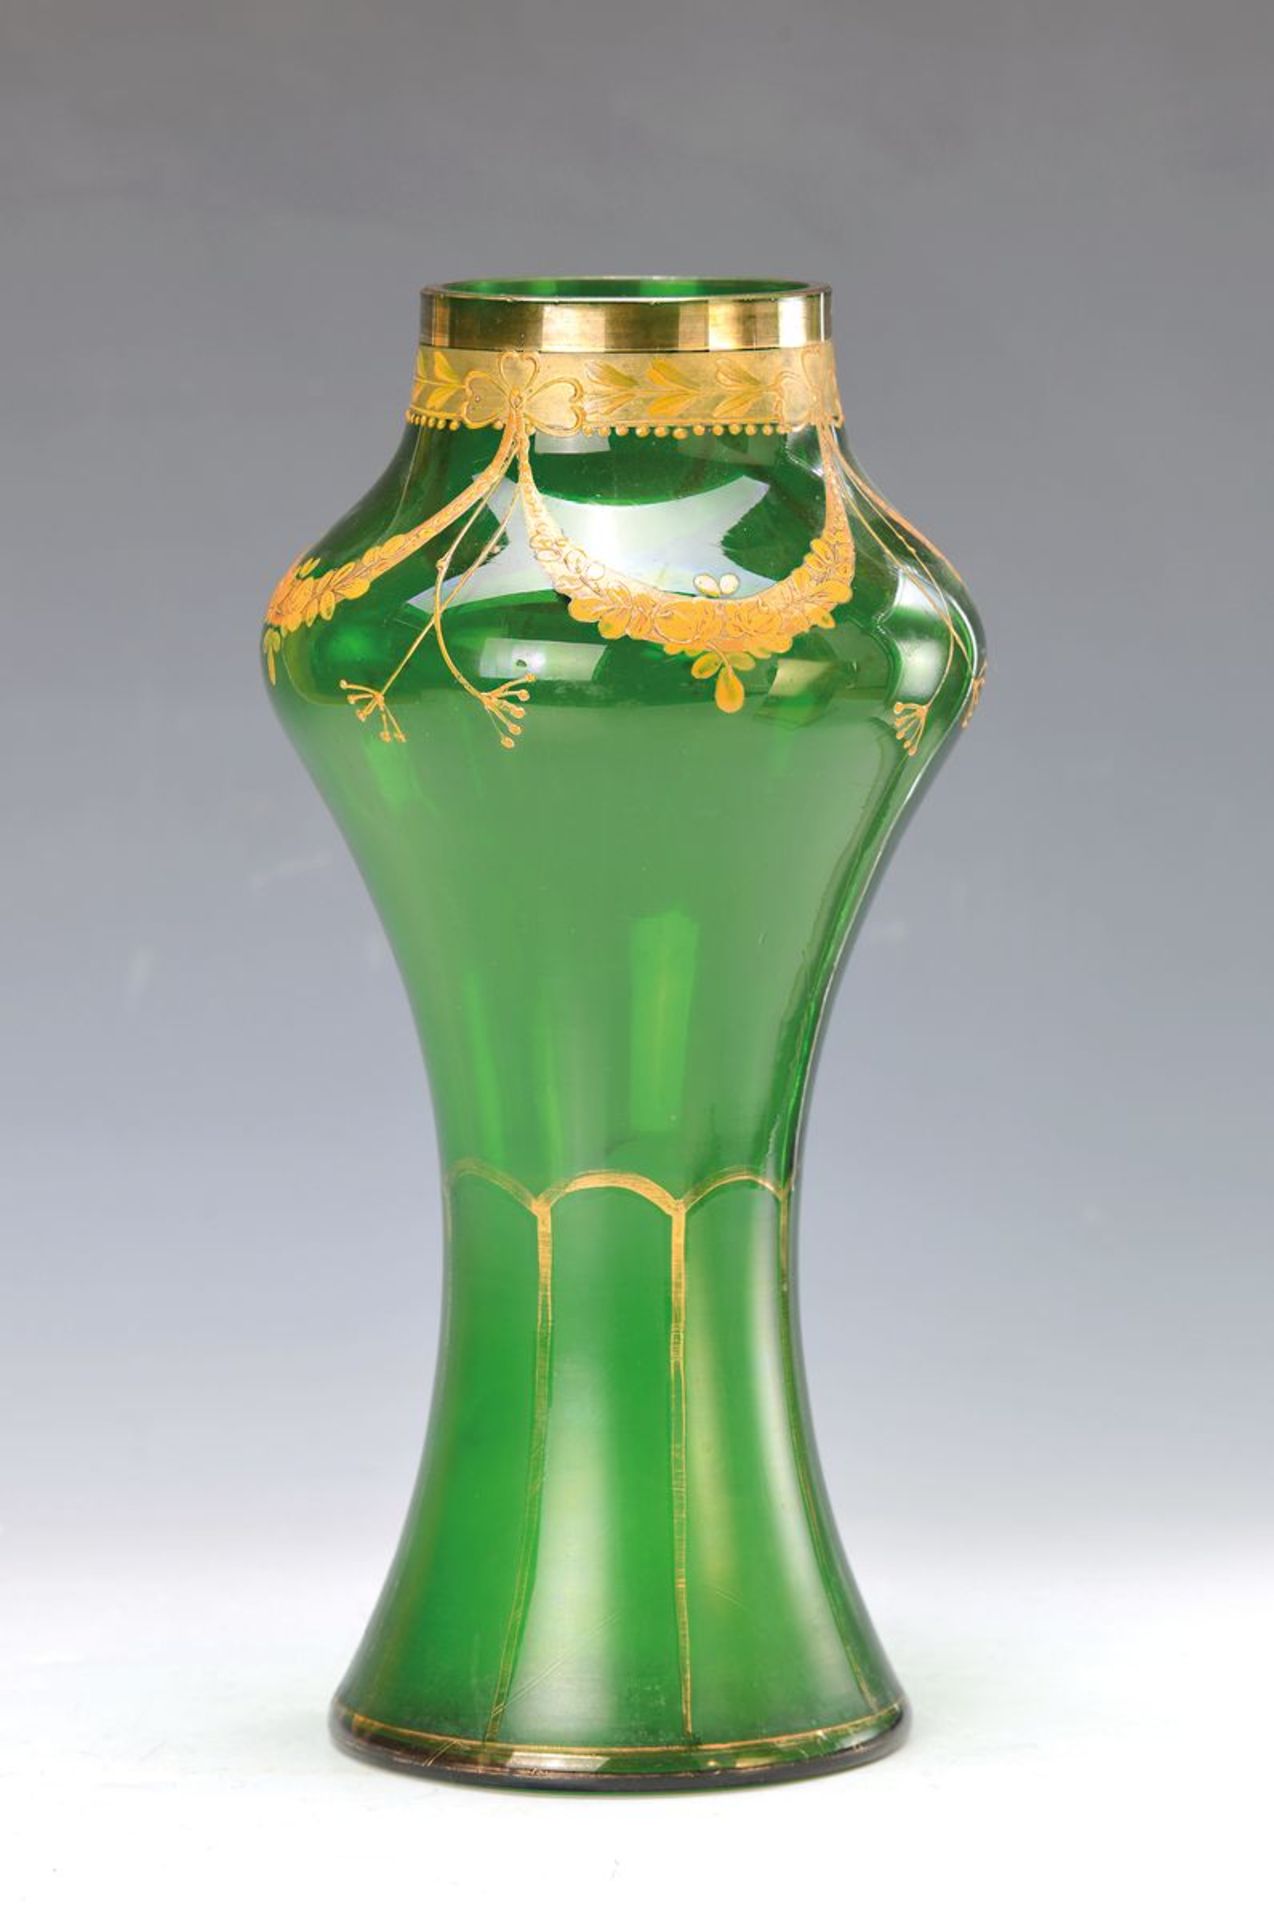 Jugendstilvase, Böhmen, um 1890, grünes Glas, im unteren Teil mattiert, am oberen Rand